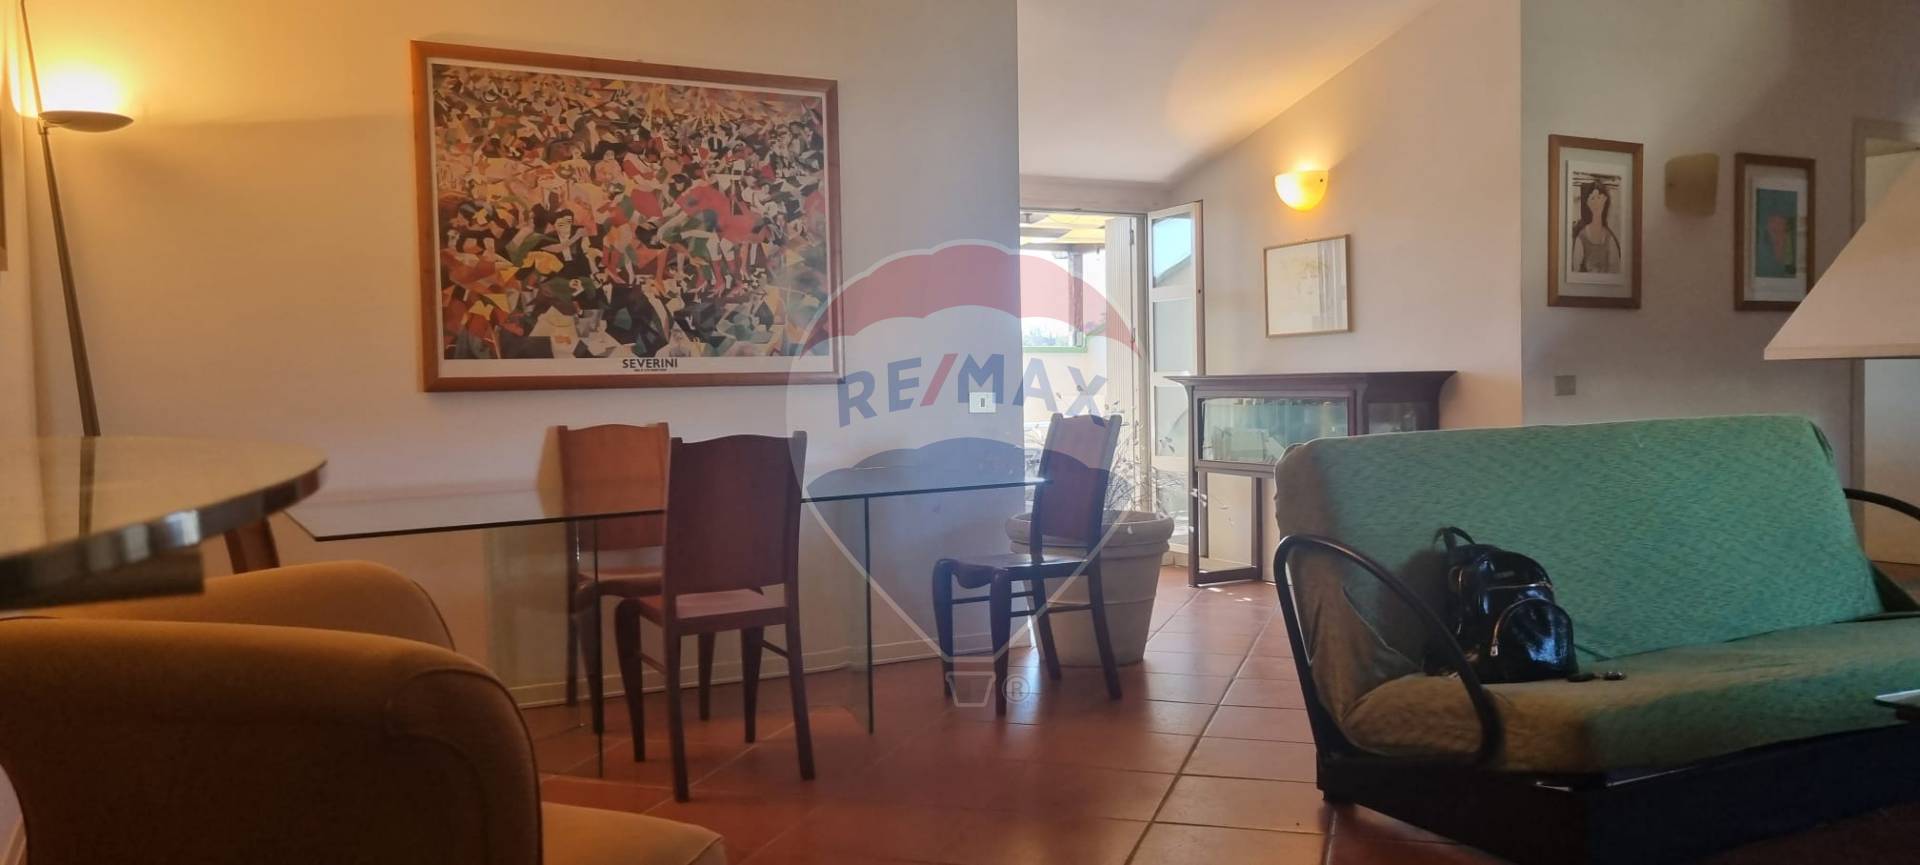 Appartamento in affitto a Terranuova Bracciolini, 4 locali, zona Zona: Pernina, prezzo € 700 | CambioCasa.it